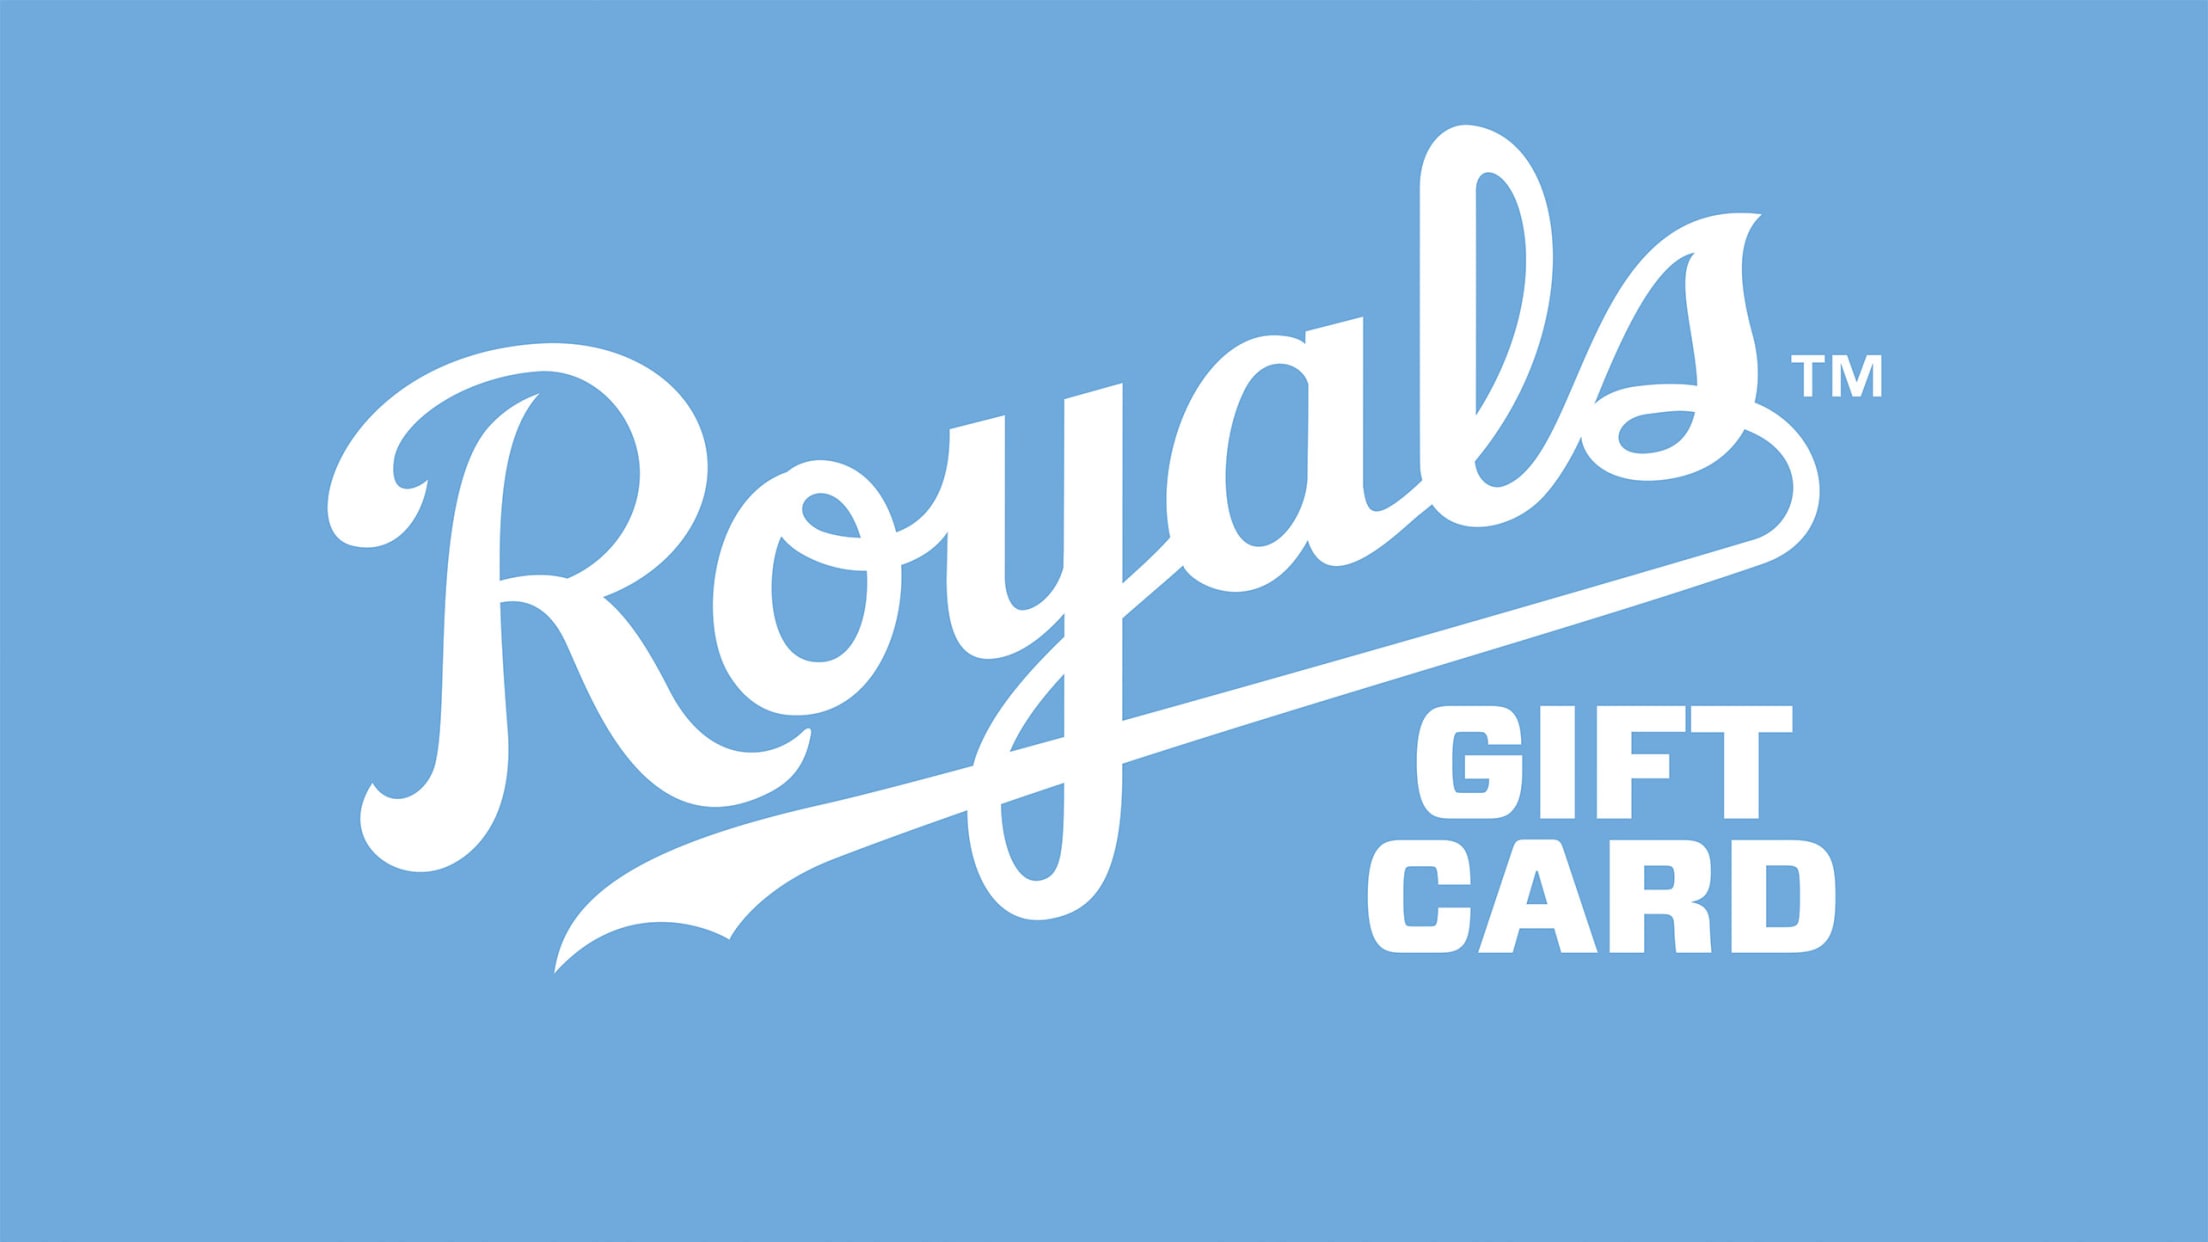 Kansas City Royals Game Ticket Gift Voucher